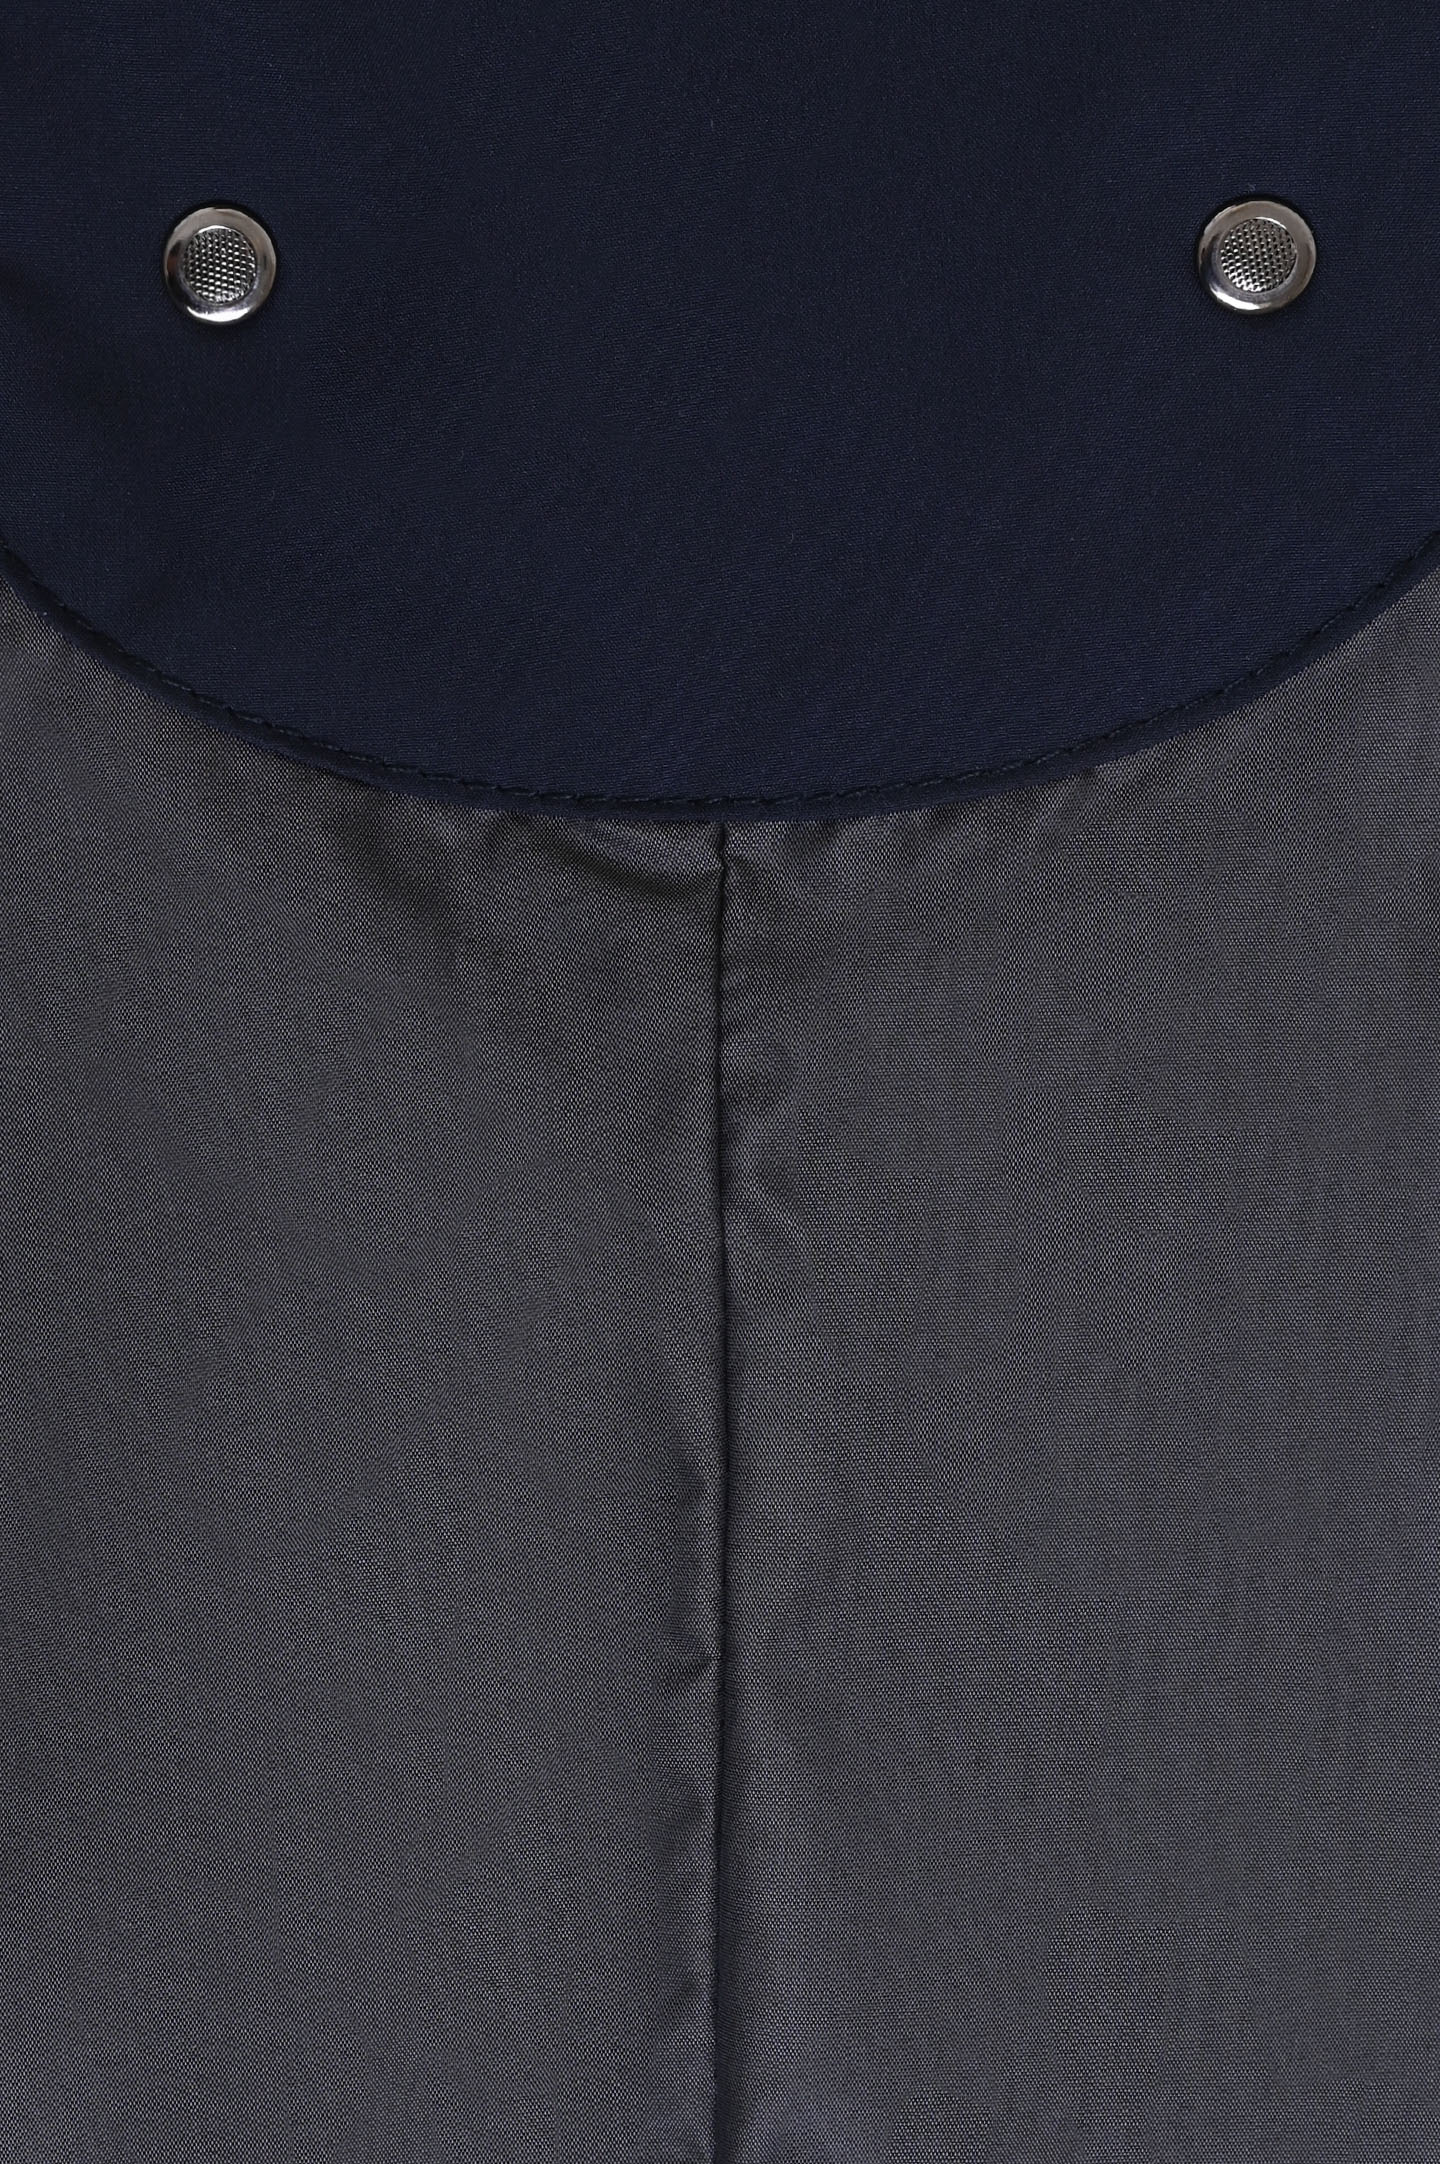 Куртка MOORER STAZIO-SKT, цвет: Синий, Мужской